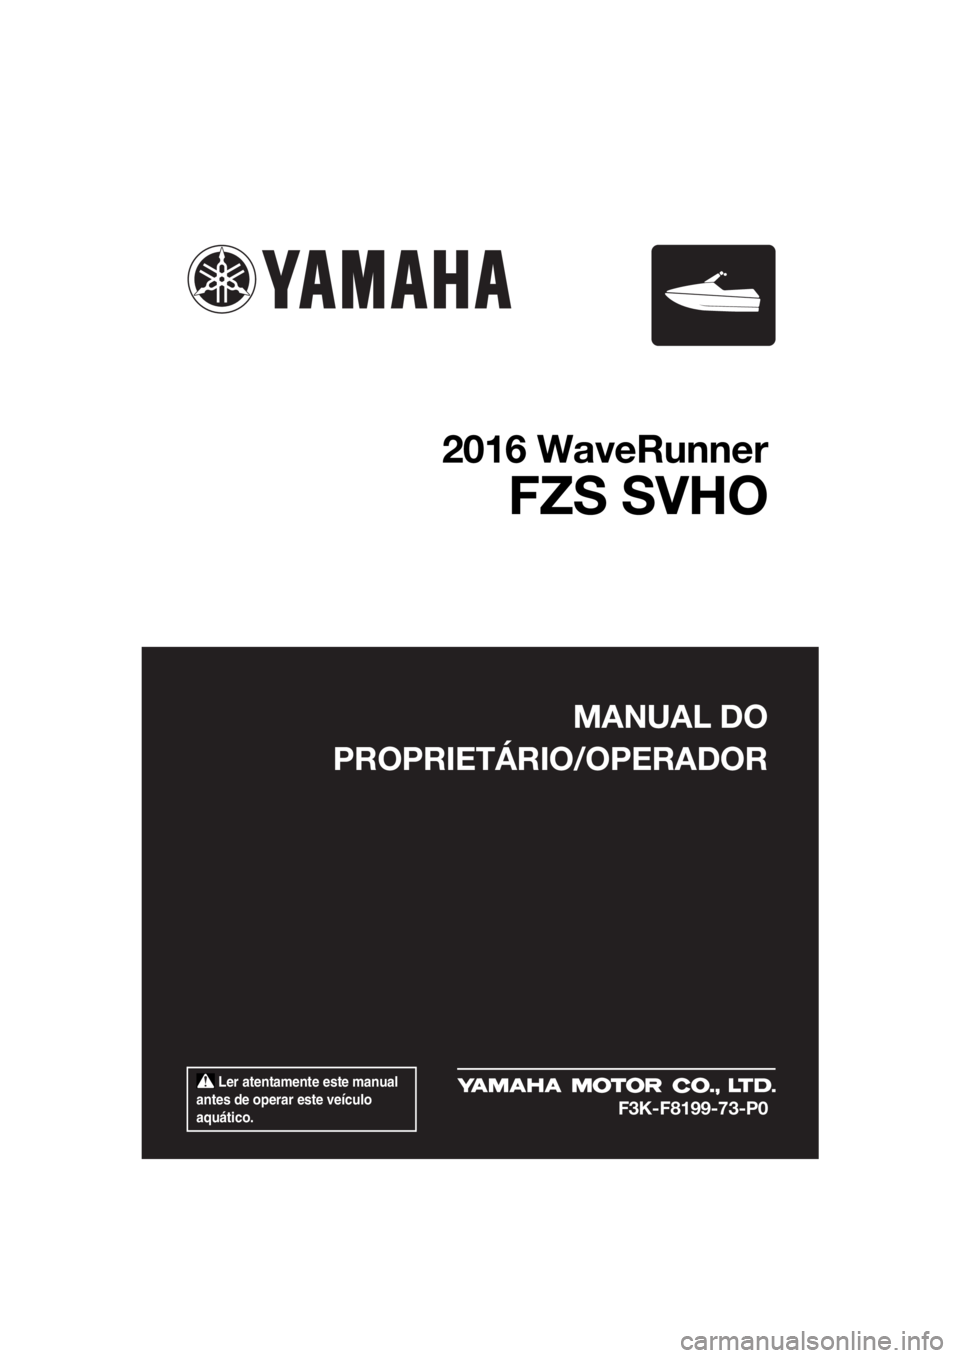 YAMAHA FZS SVHO 2016  Manual de utilização (in Portuguese)  Ler atentamente este manual 
antes de operar este veículo 
aquático.
MANUAL DO
PROPRIETÁRIO/OPERADOR
2016 WaveRunner
FZS SVHO
F3K-F8199-73-P0
UF3K73P0.book  Page 1  Tuesday, August 25, 2015  11:25